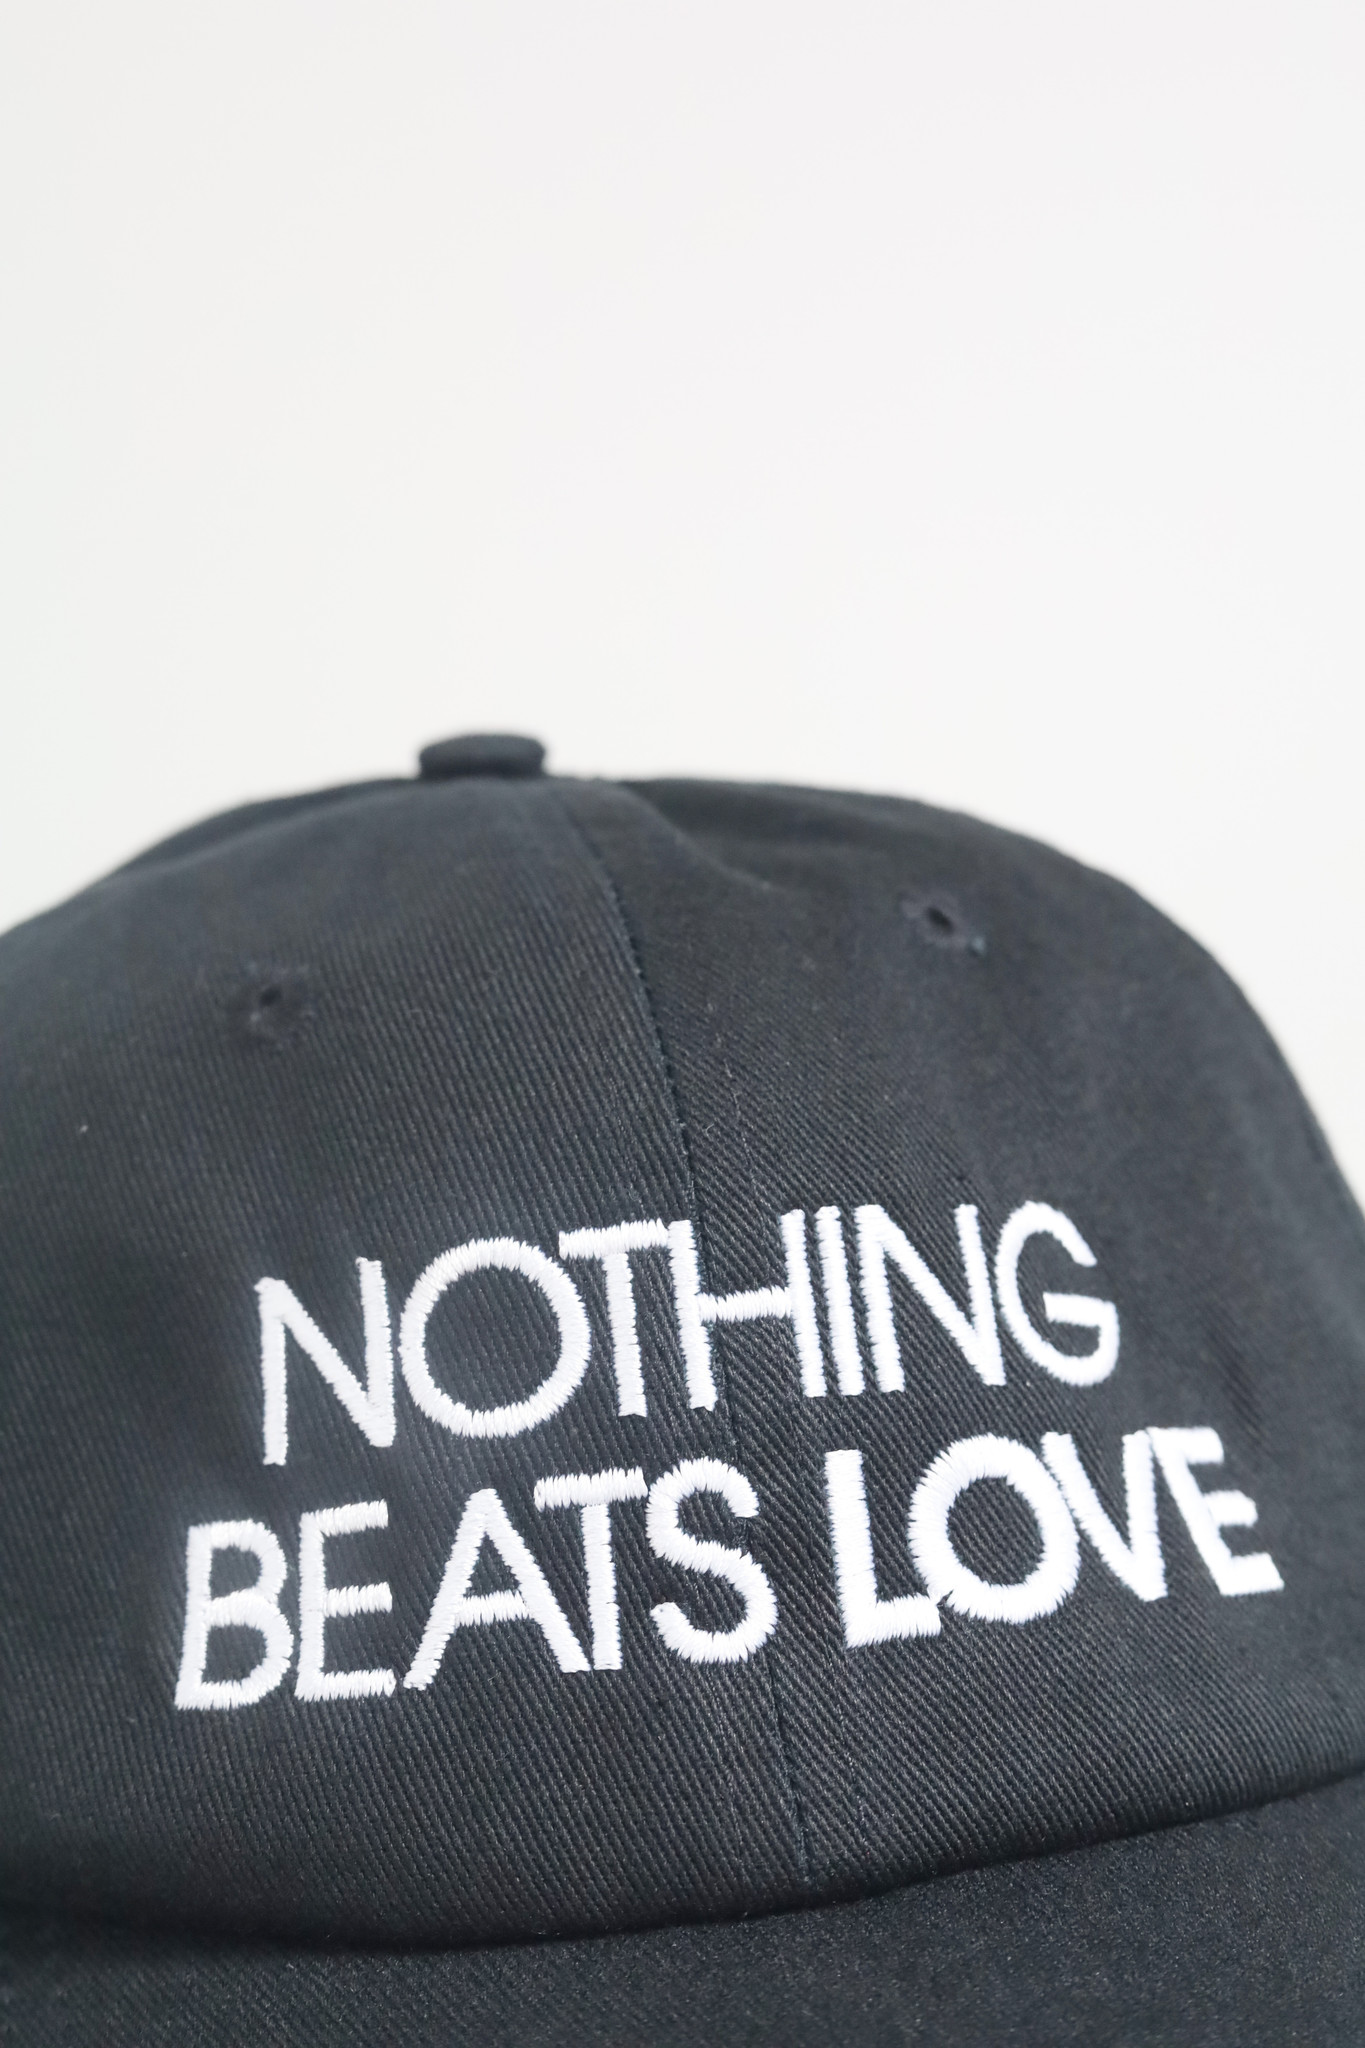 Nothing beats love cap (zwart)